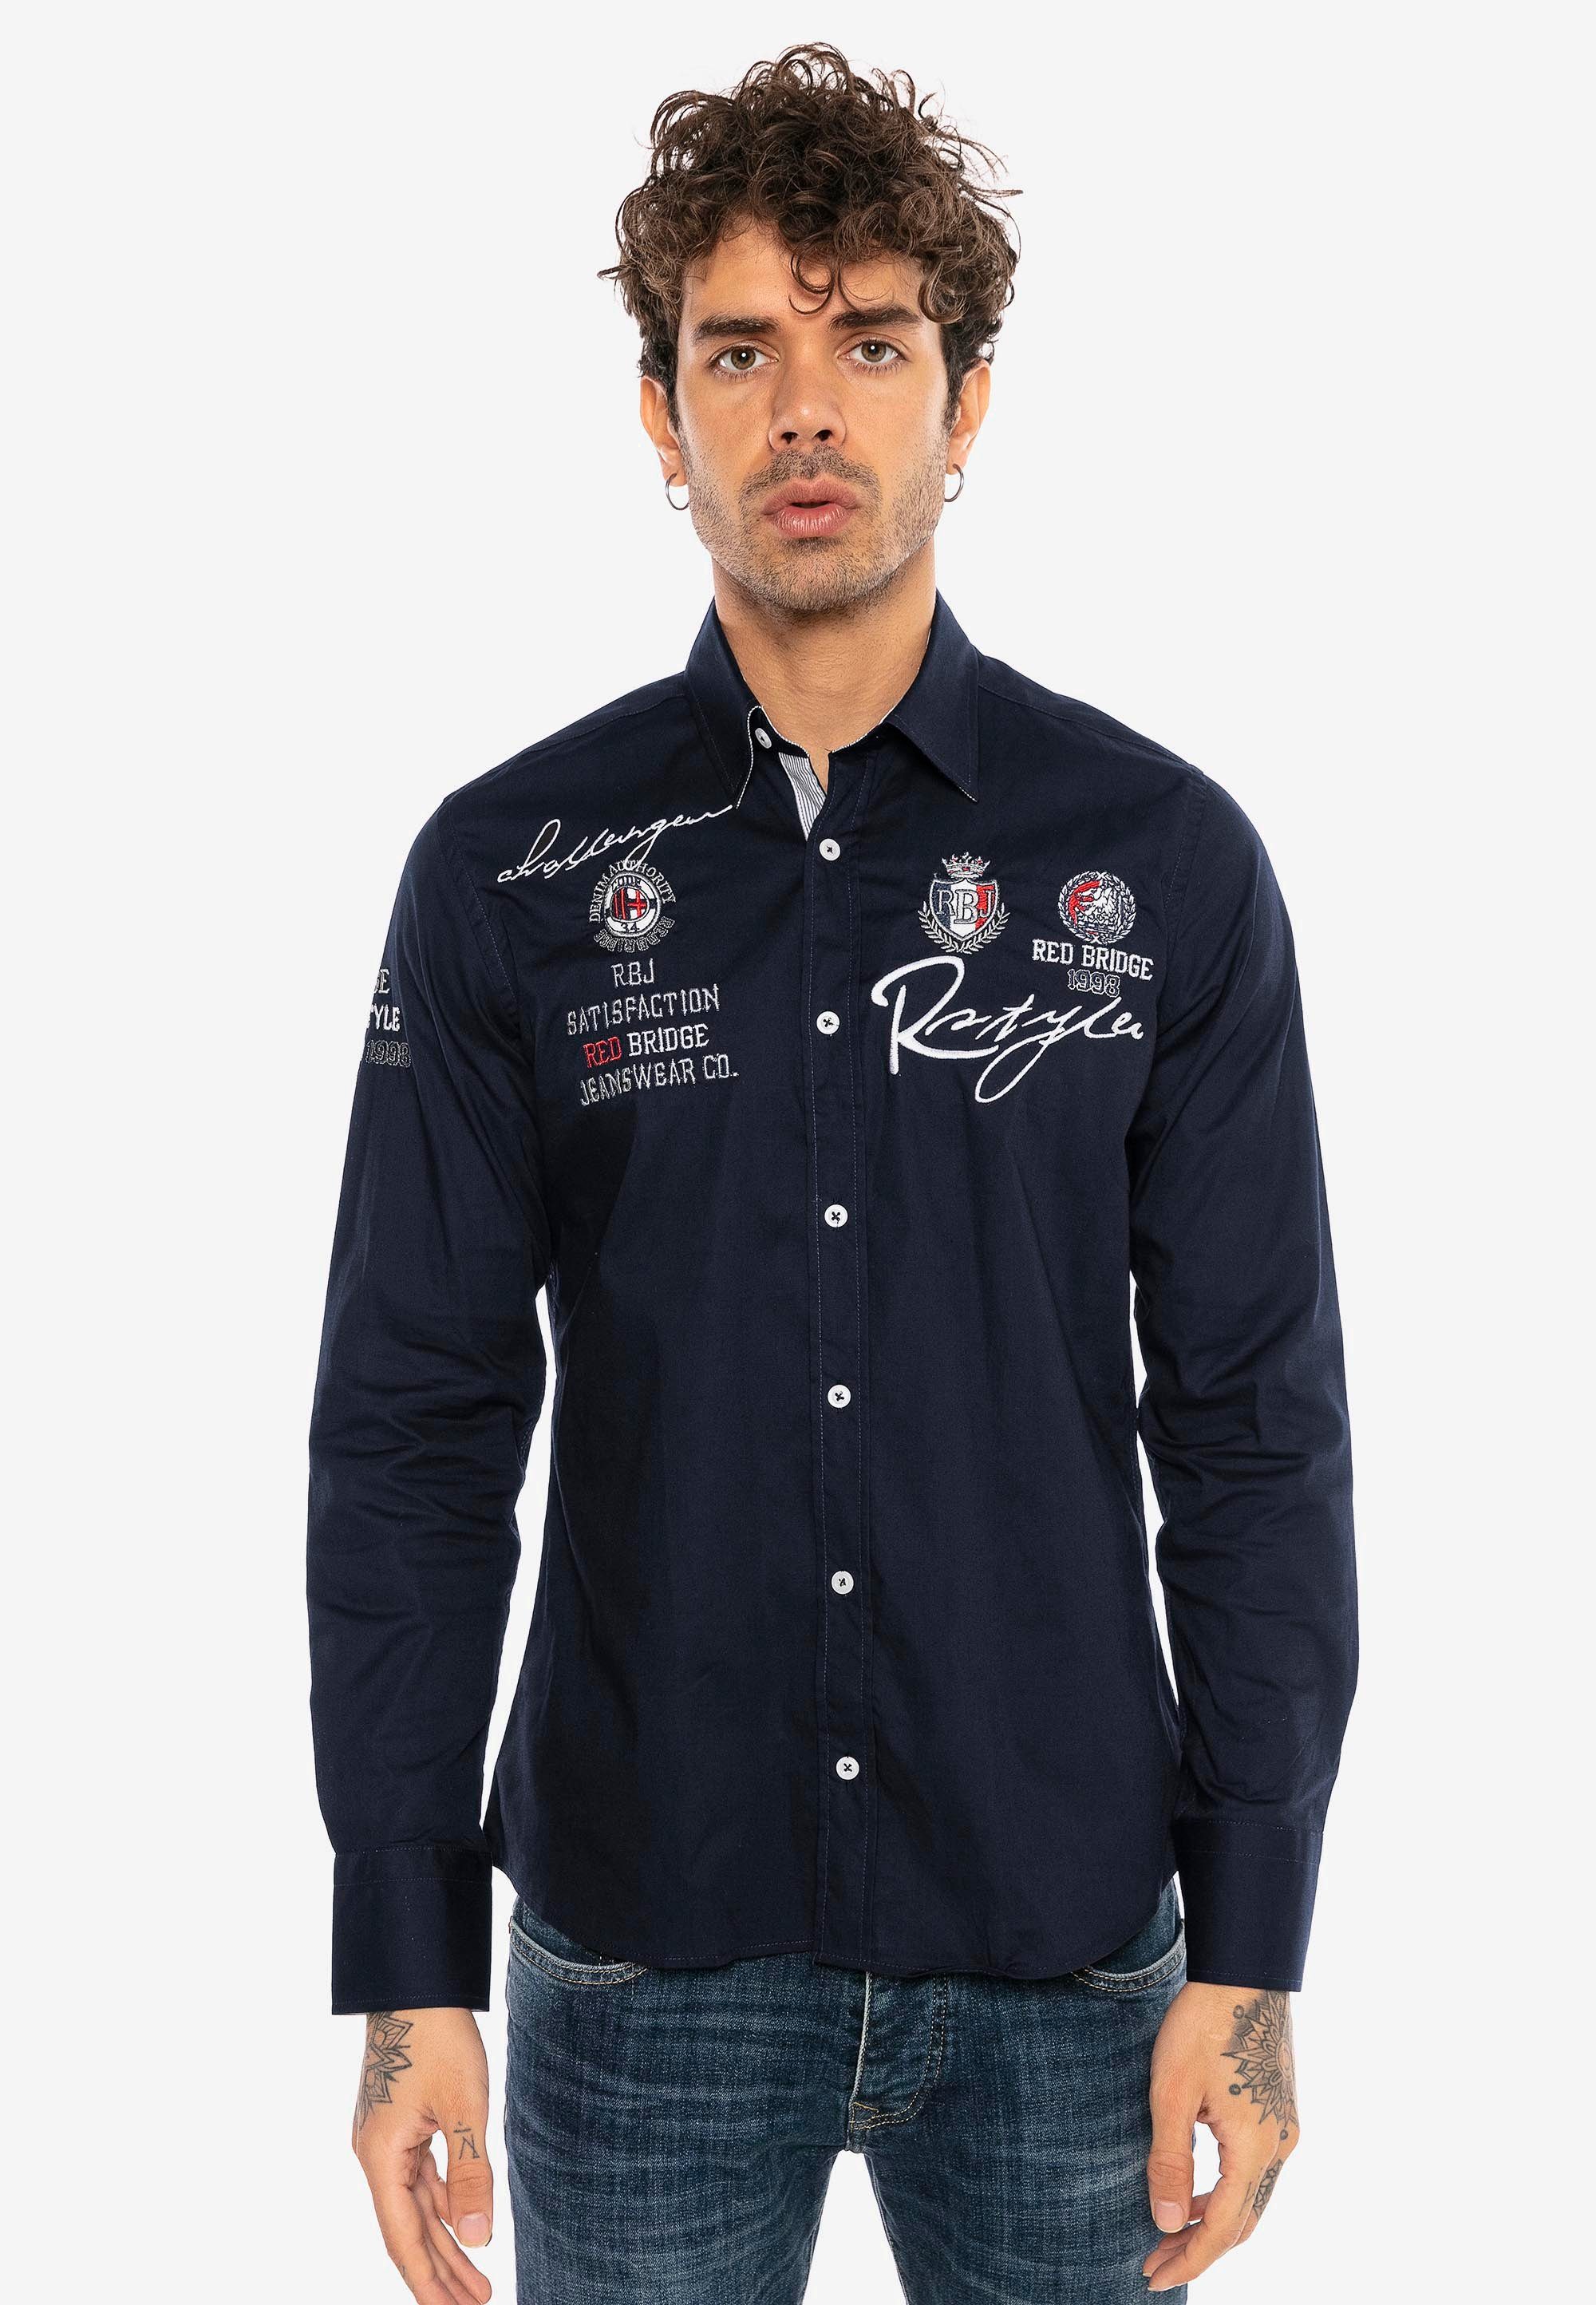 Jersey mit City RedBridge Fit-Schnitt im Langarmhemd dunkelblau Slim Stickerei